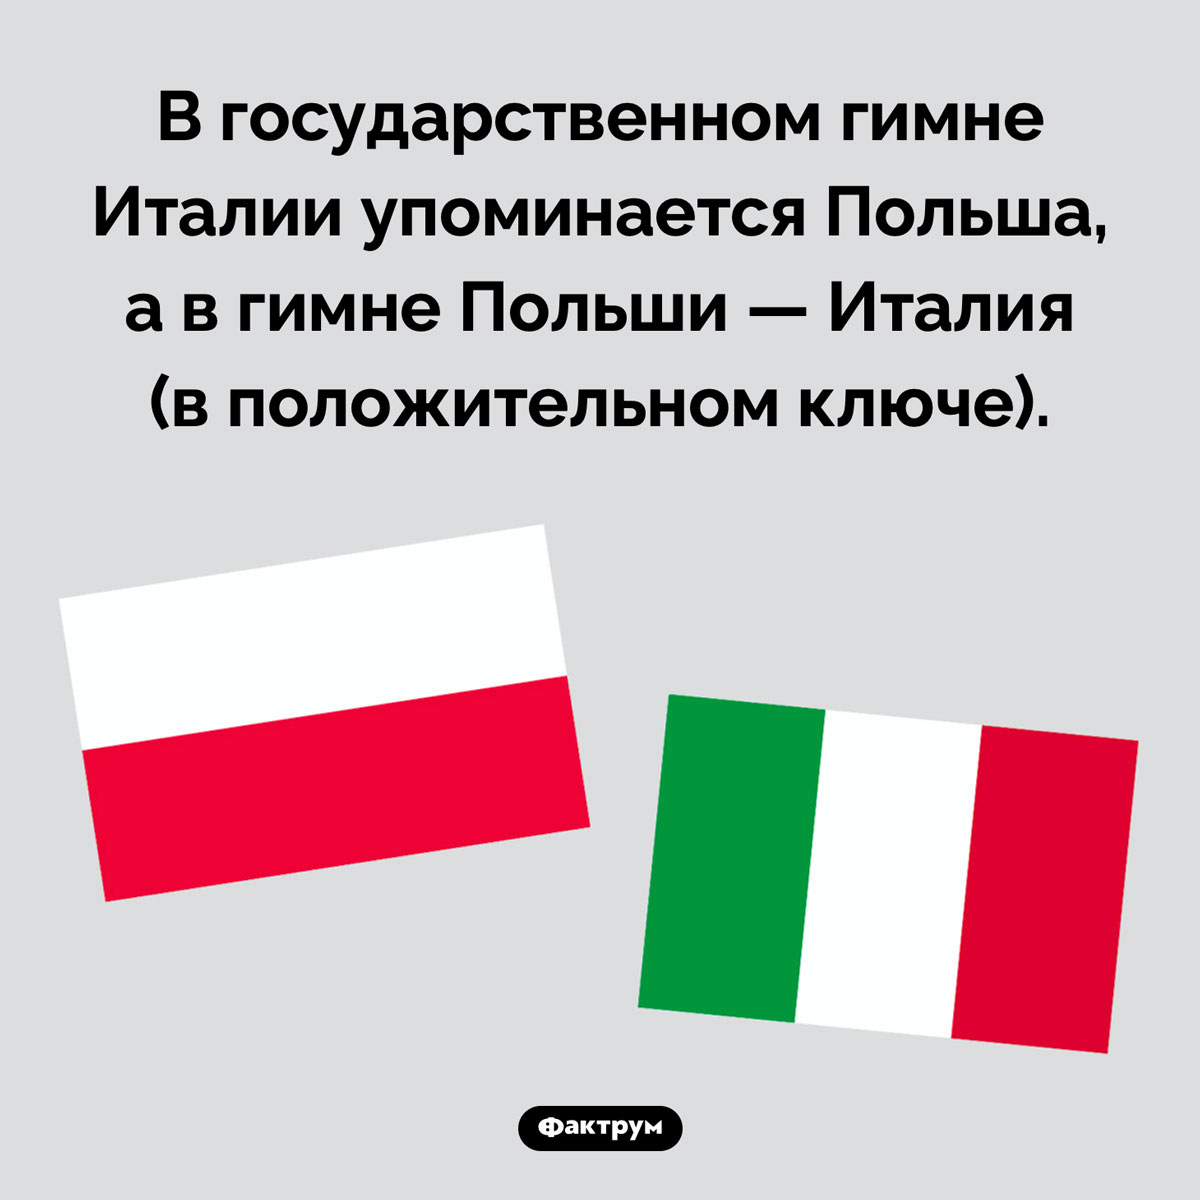 Что общего между Италией и Польшей. В государственном гимне Италии упоминается Польша, а в гимне Польши — Италия (в положительном ключе).